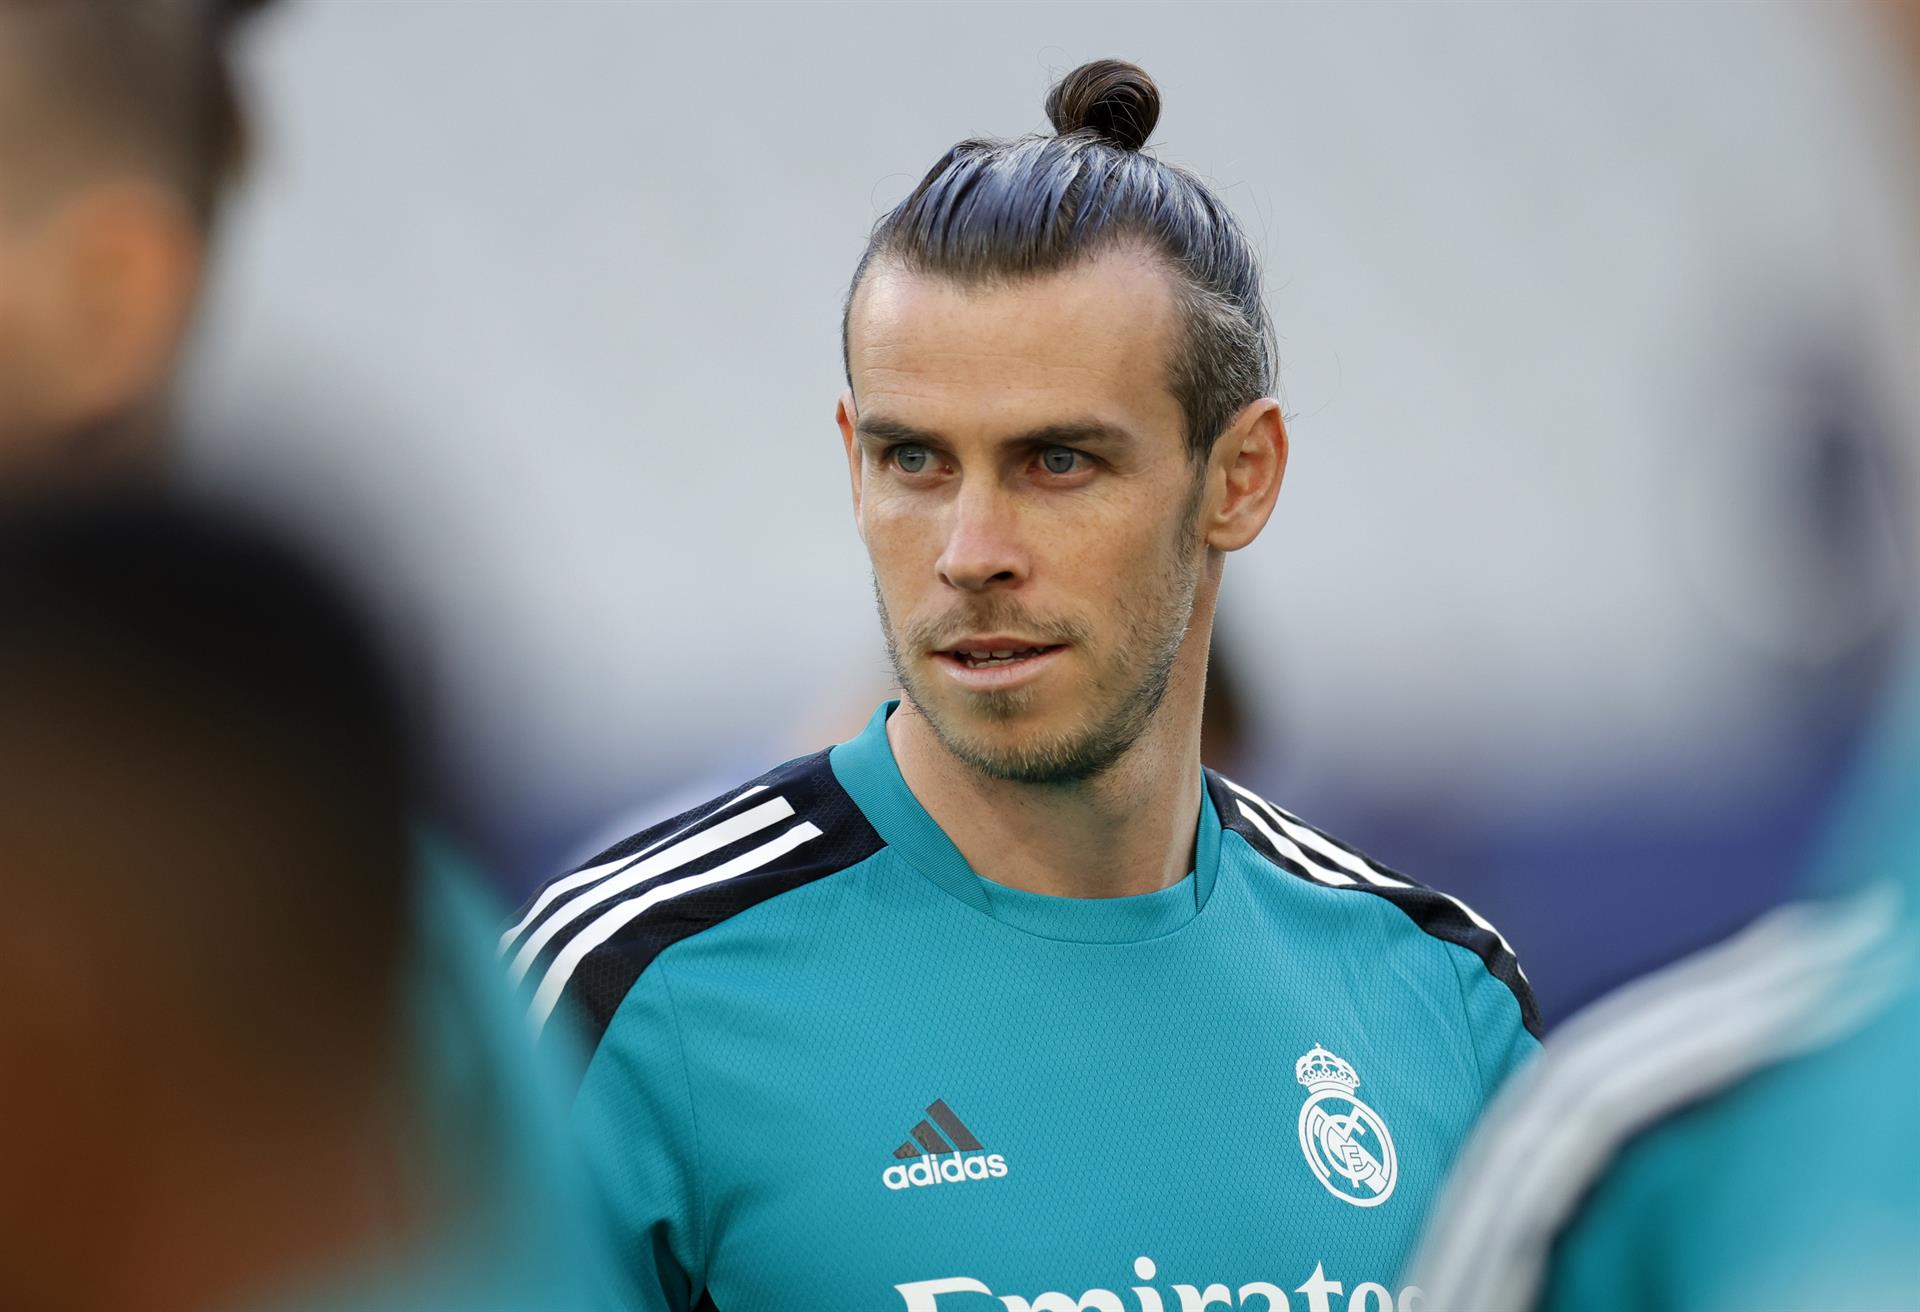 La felicitación de Bale al Madrid por el 0-4 al Barça: "Increíble actuación"